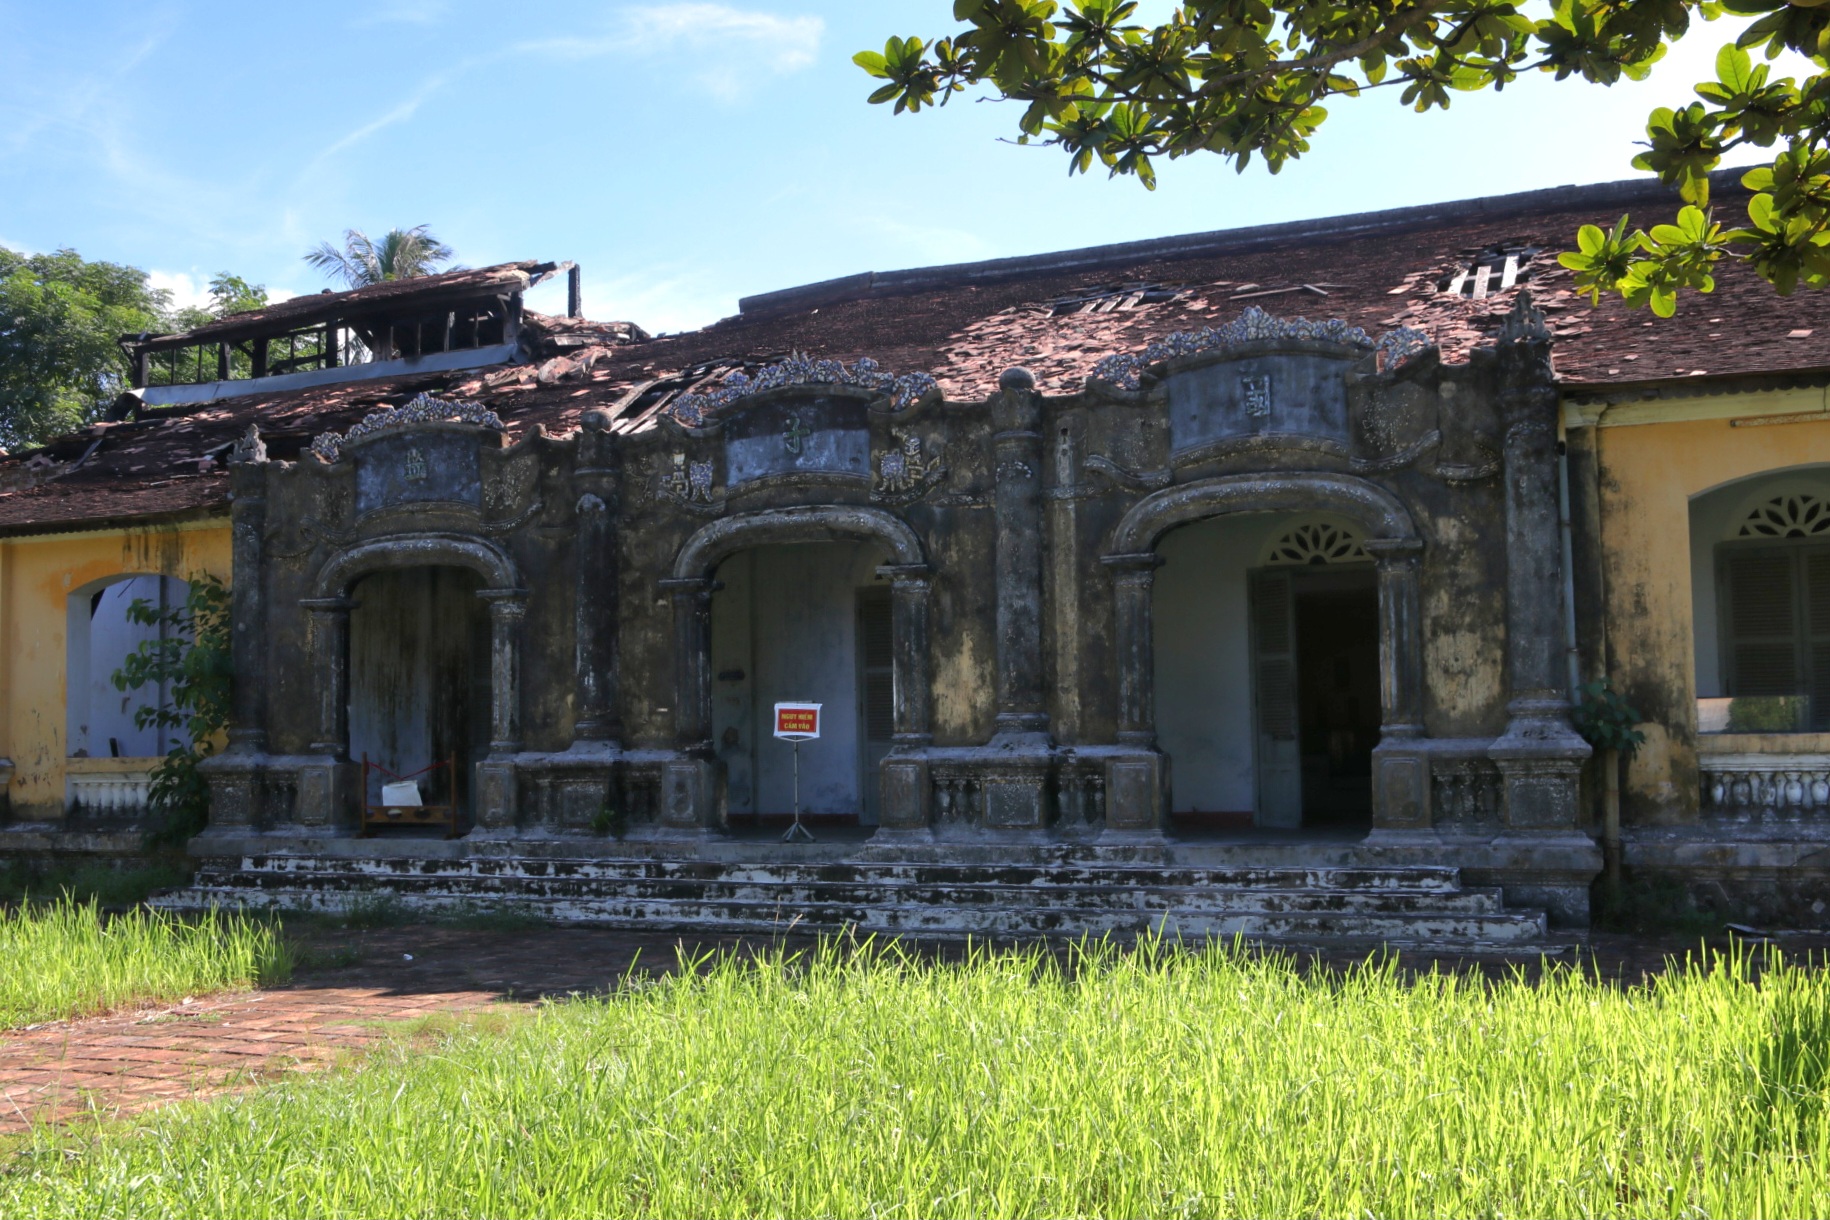 Nhà trưng bày hiện vật bảo tàng ở Huế vẫn 'trơ khung' sau một năm xảy ra cháy - Ảnh 4.